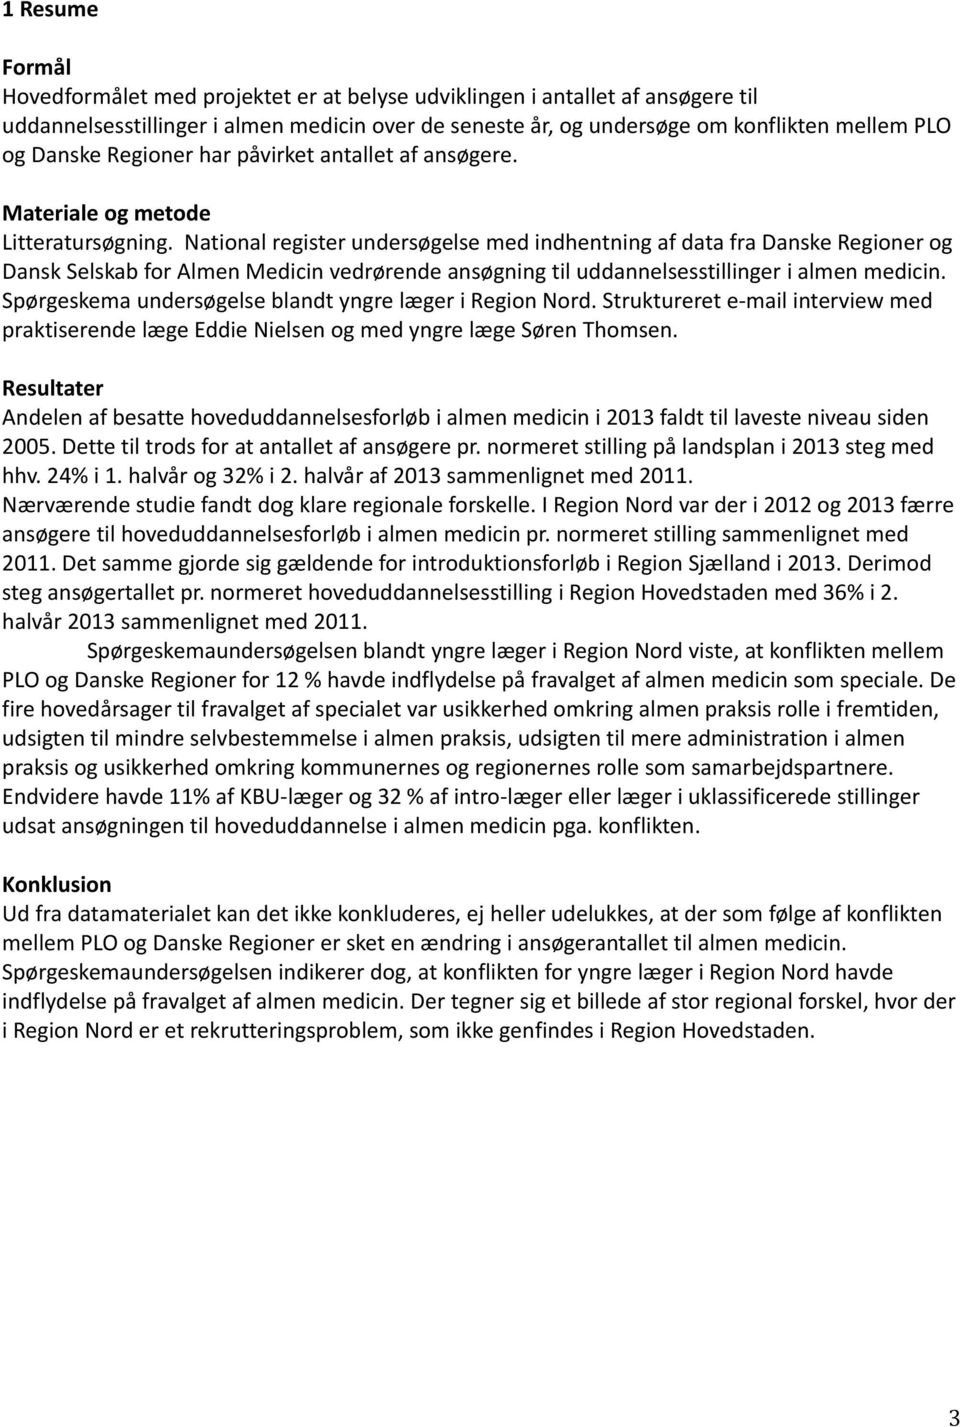 National register undersøgelse med indhentning af data fra Danske Regioner og Dansk Selskab for Almen Medicin vedrørende ansøgning til uddannelsesstillinger i almen medicin.